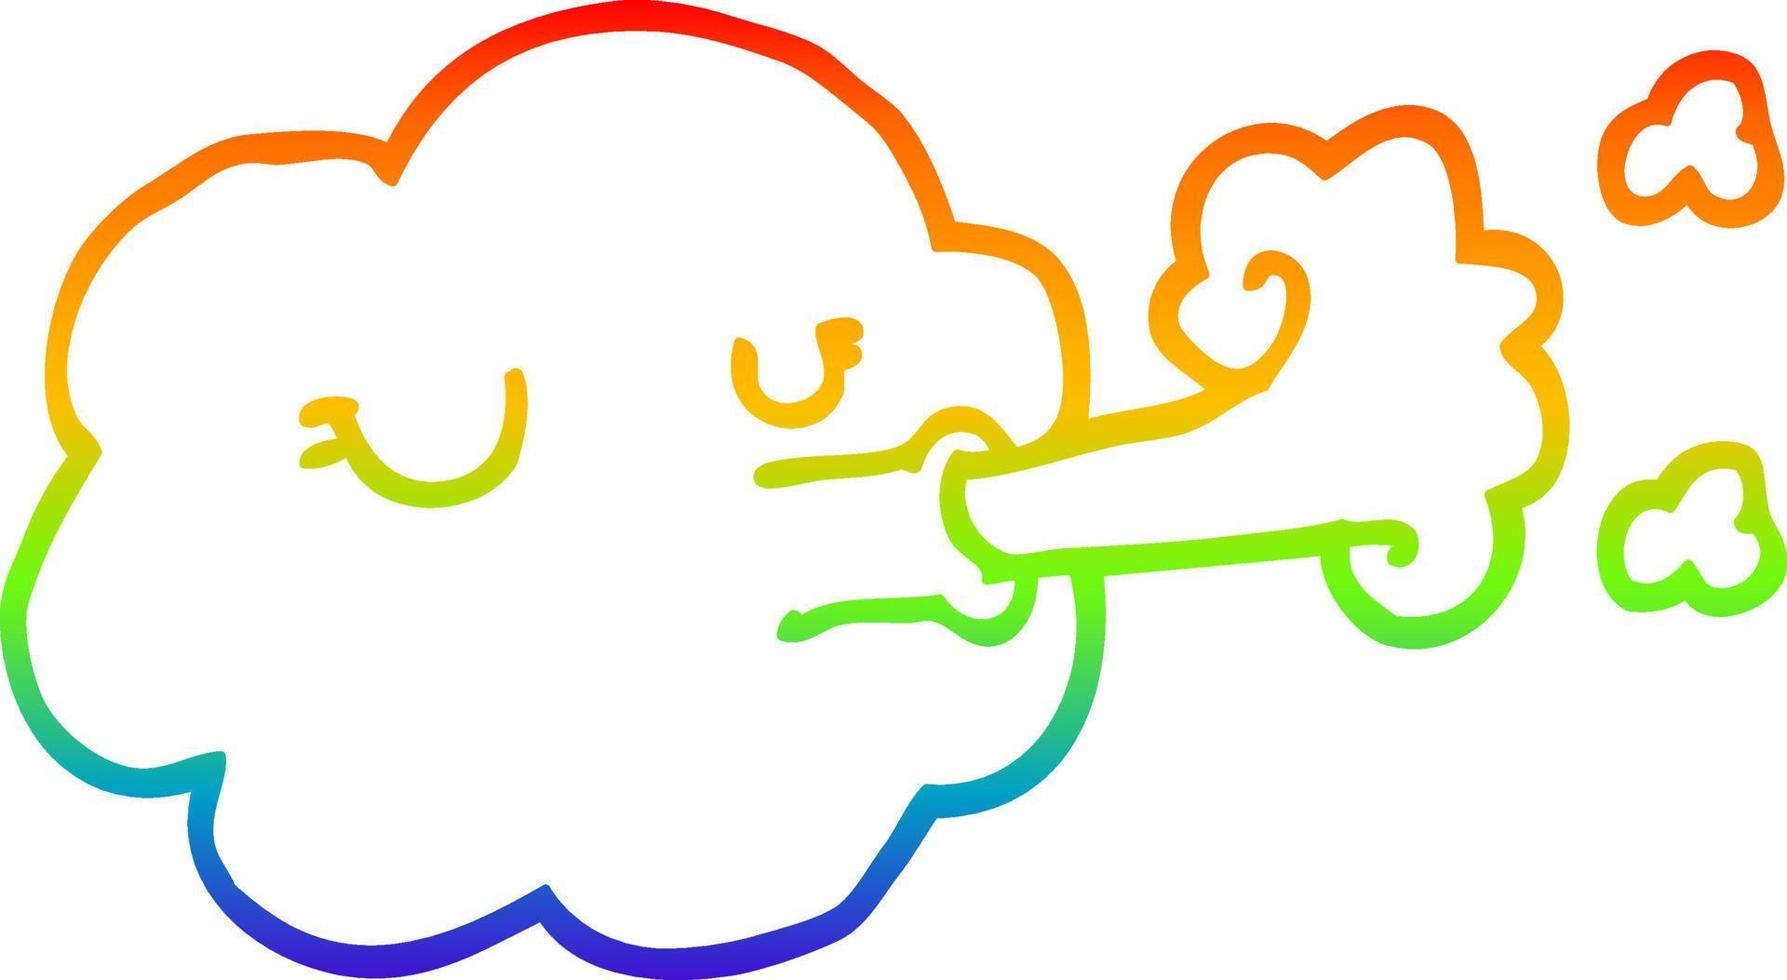 regenbooggradiënt lijntekening cartoon wolk die een storm blaast vector